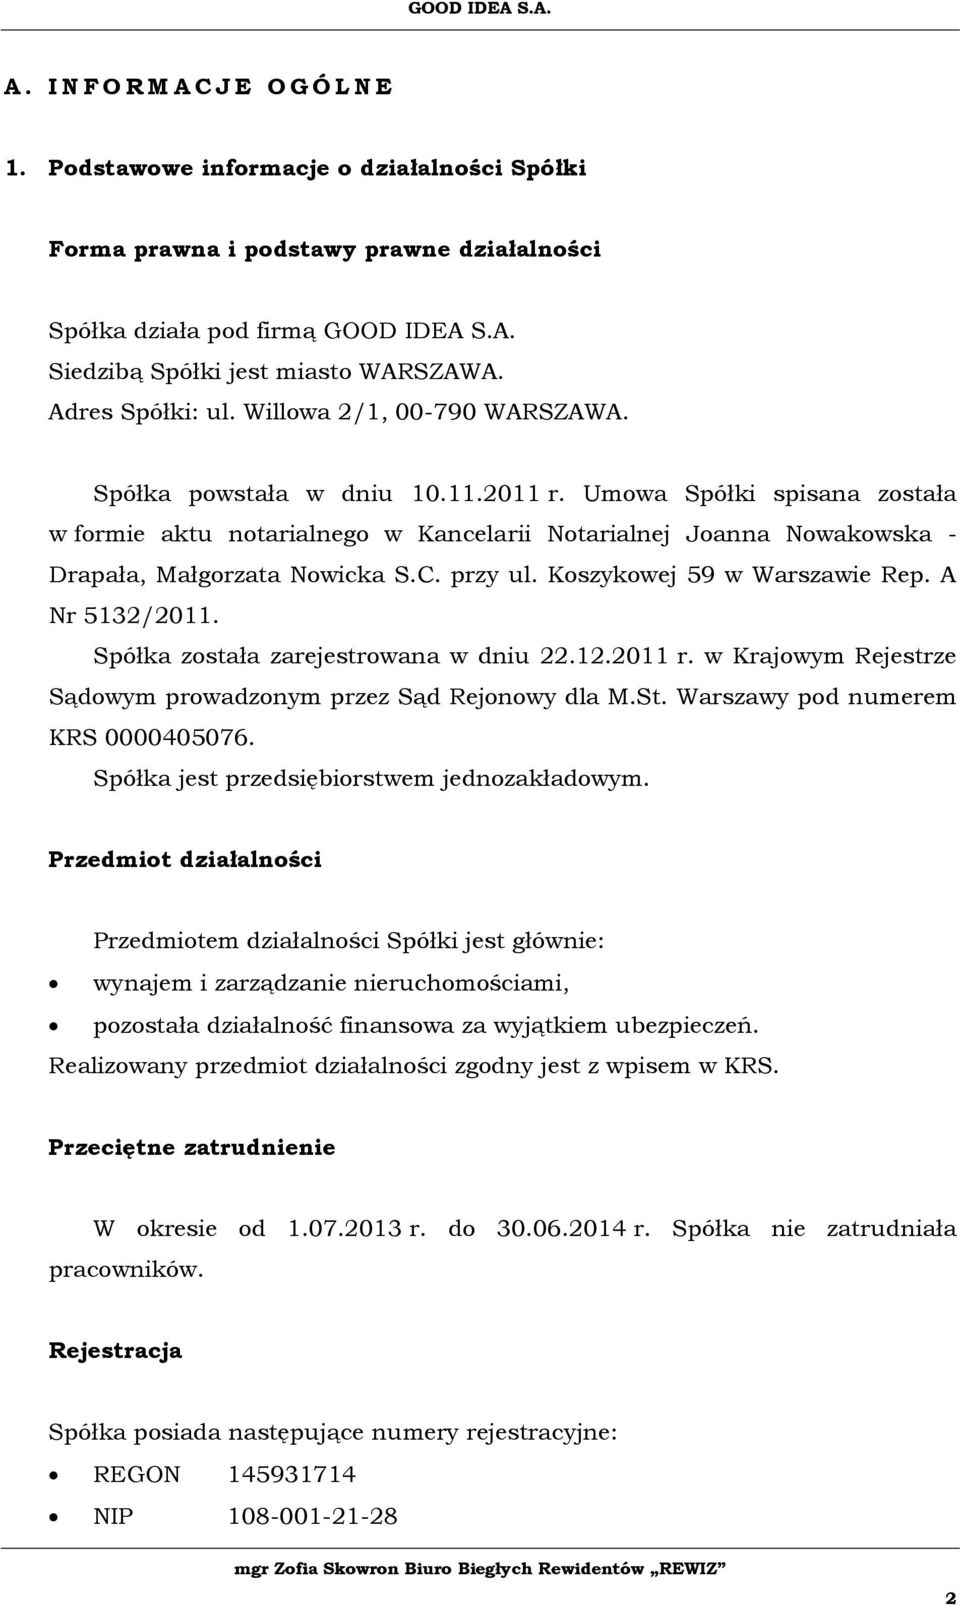 Umowa Spółki spisana została w formie aktu notarialnego w Kancelarii Notarialnej Joanna Nowakowska - Drapała, Małgorzata Nowicka S.C. przy ul. Koszykowej 59 w Warszawie Rep. A Nr 5132/2011.